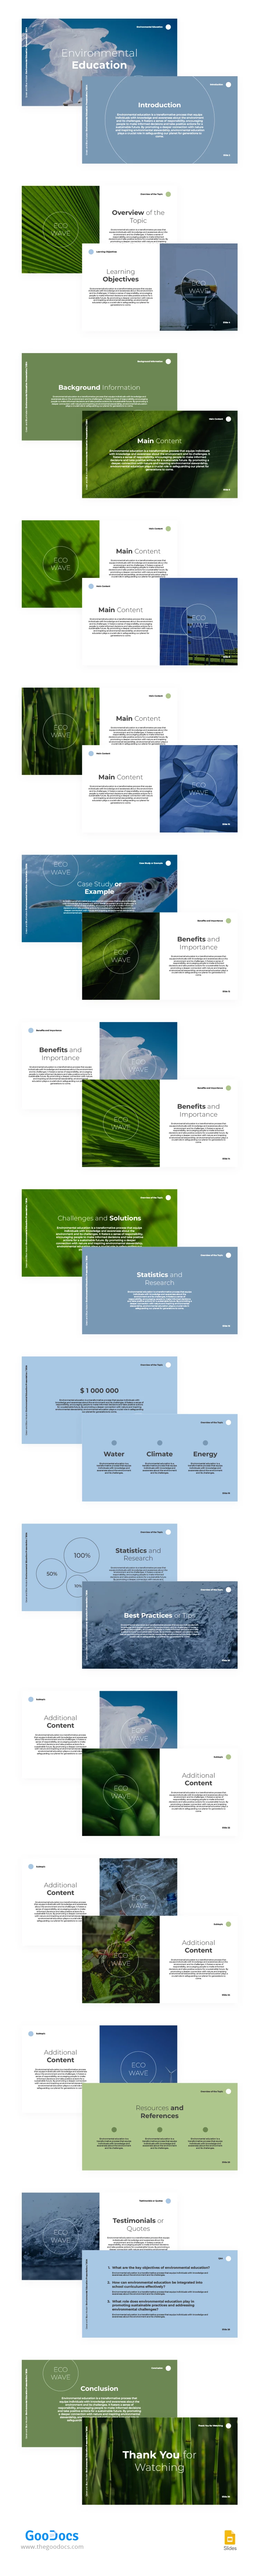 Educação Ambiental Moderna em Verde e Azul - free Google Docs Template - 10066989